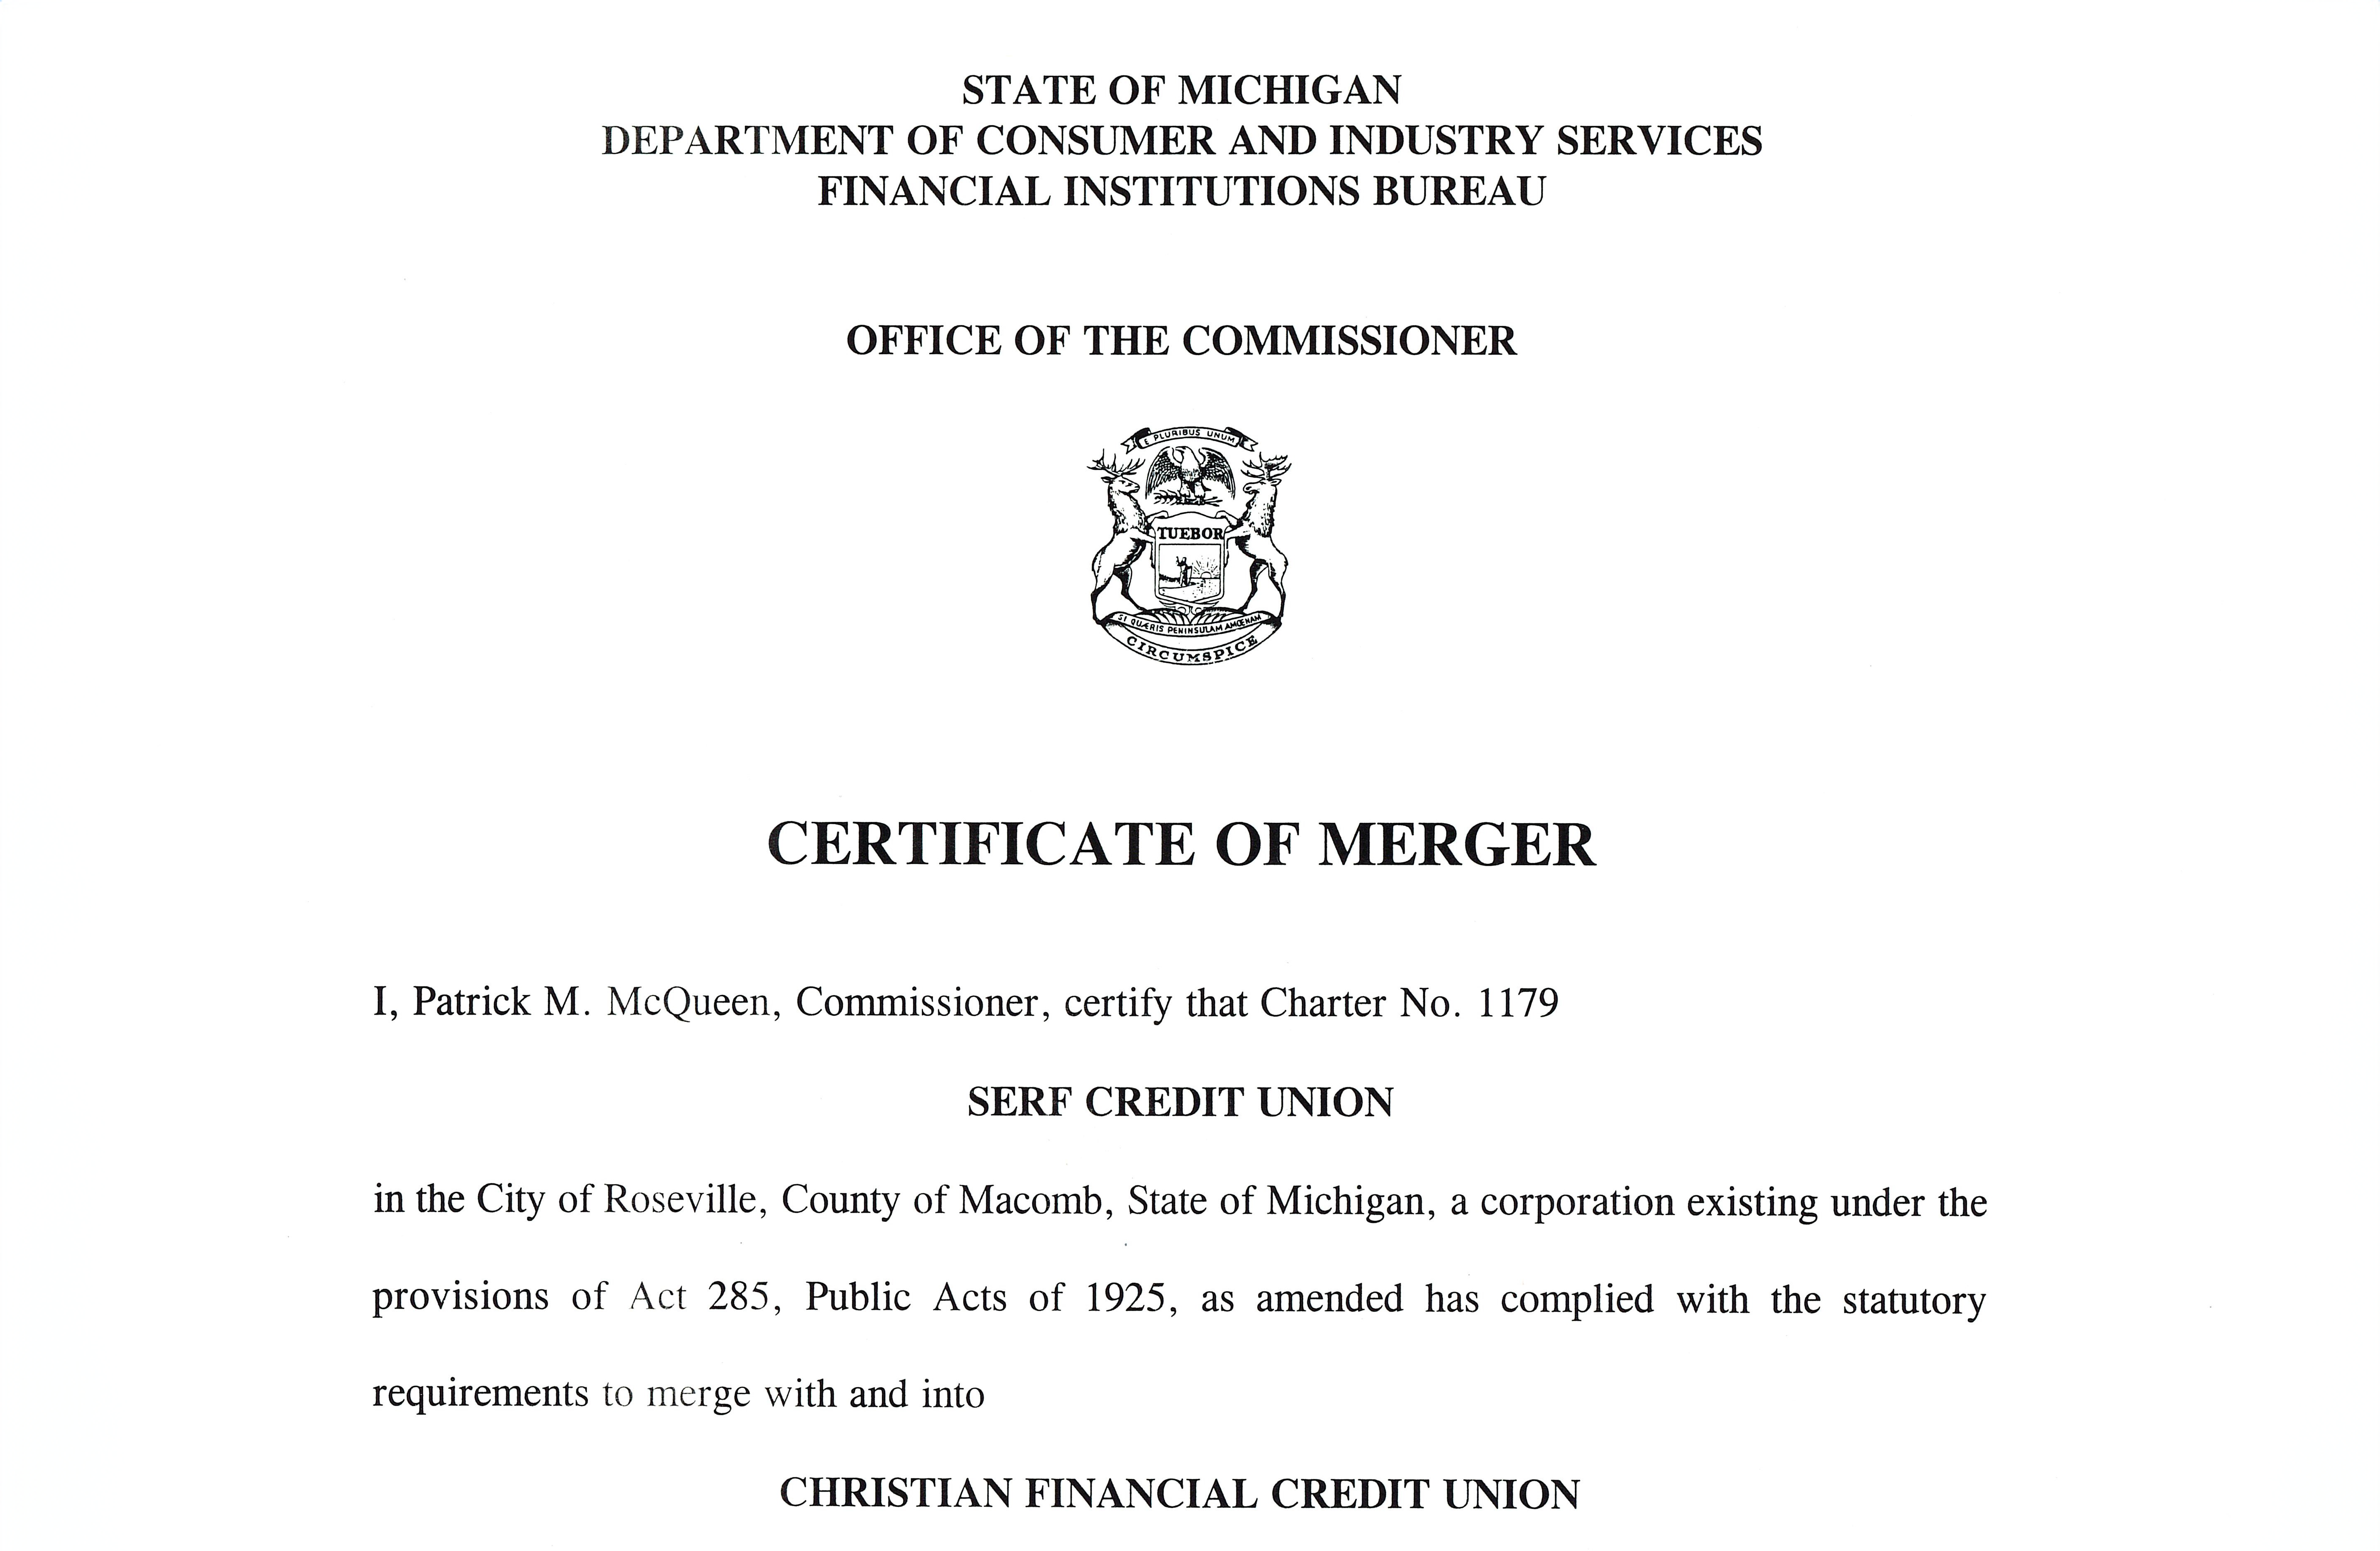 Merger Document screenshot